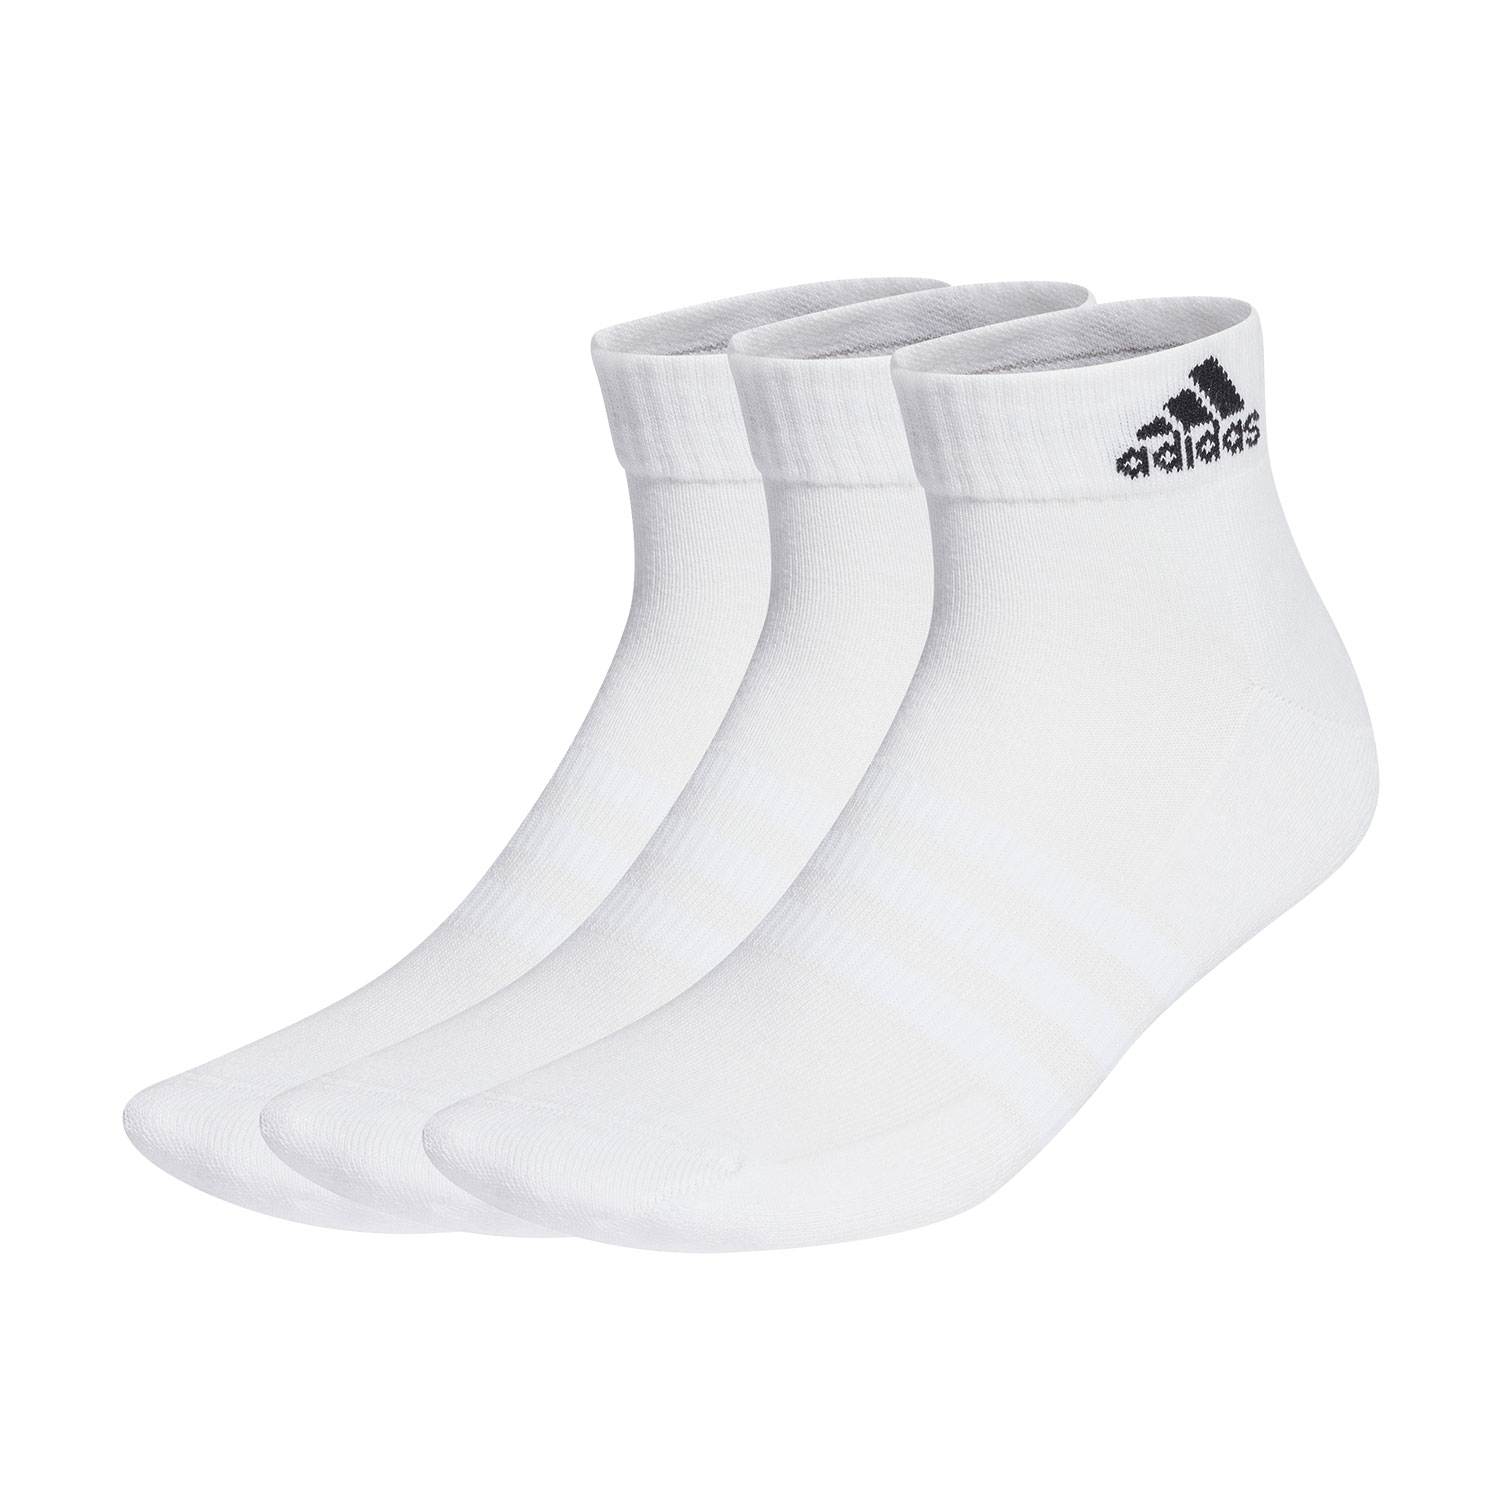 adidas Pro x 3 Tennis Socks - White/Black